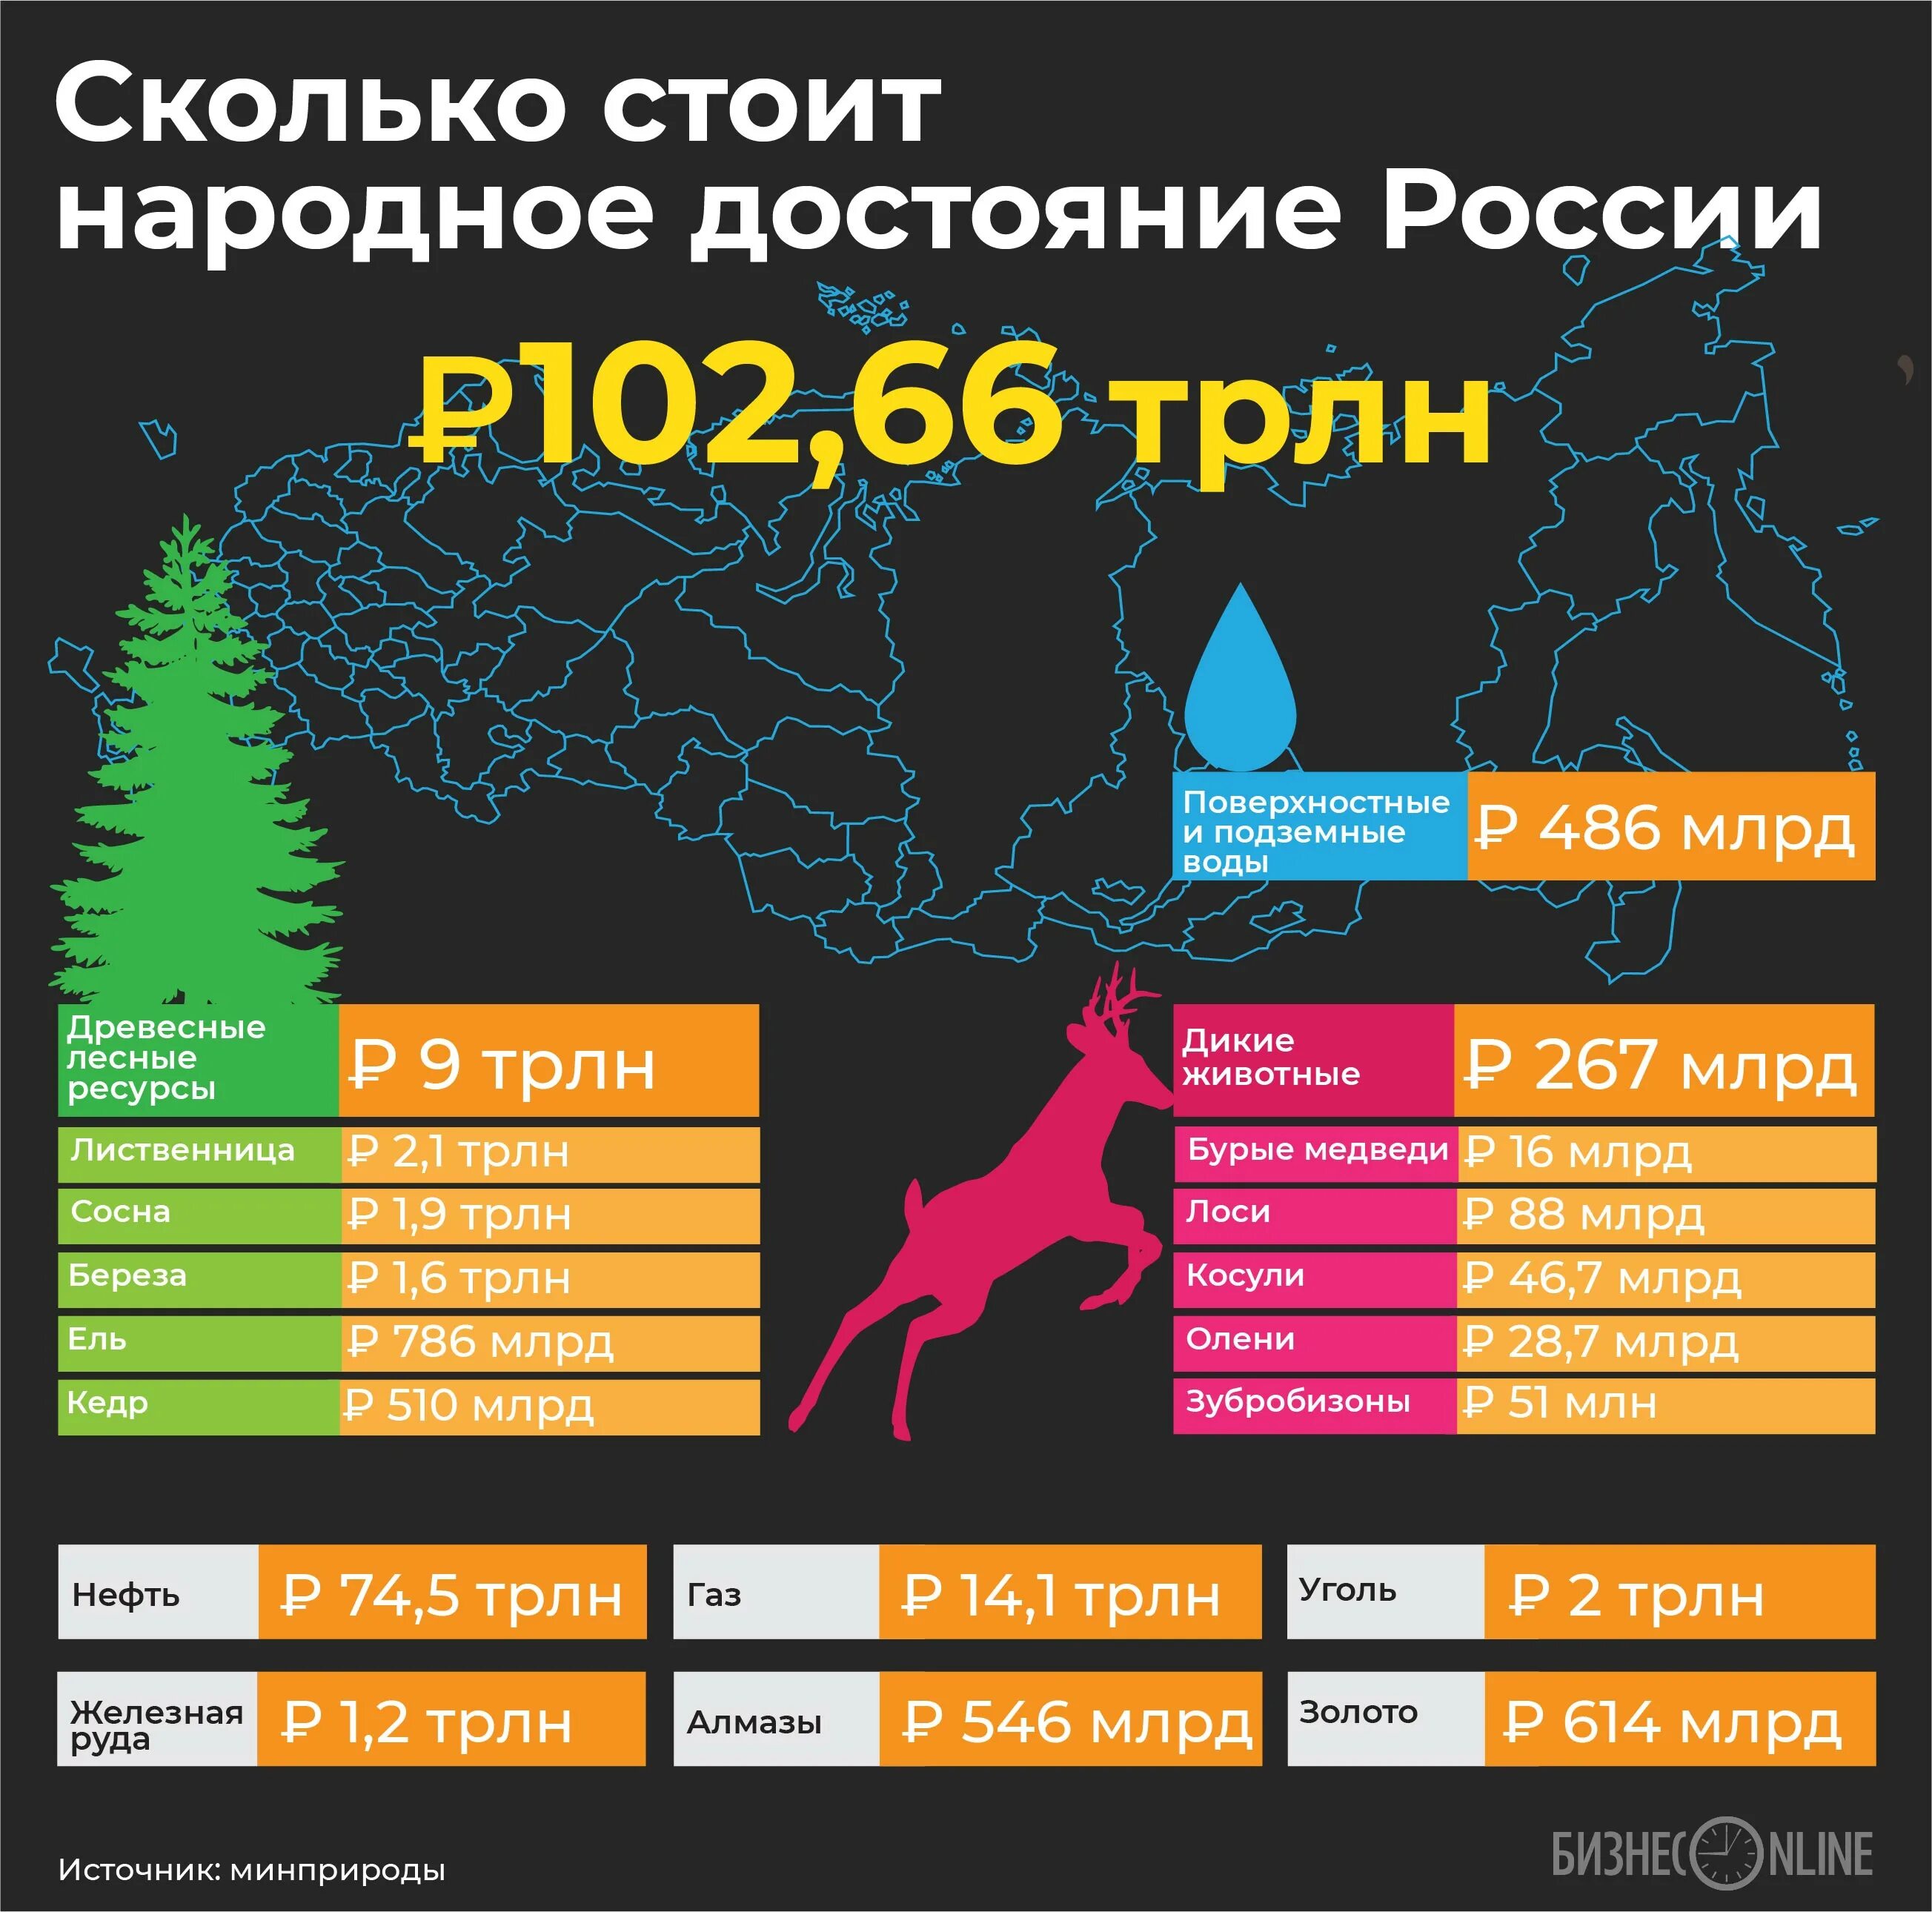 Насколько россии. Сколько стоят ресурсы России. Инфографика Лесные ресурсы. Инфографика Россия. Сколько стоят все ресурсы России.